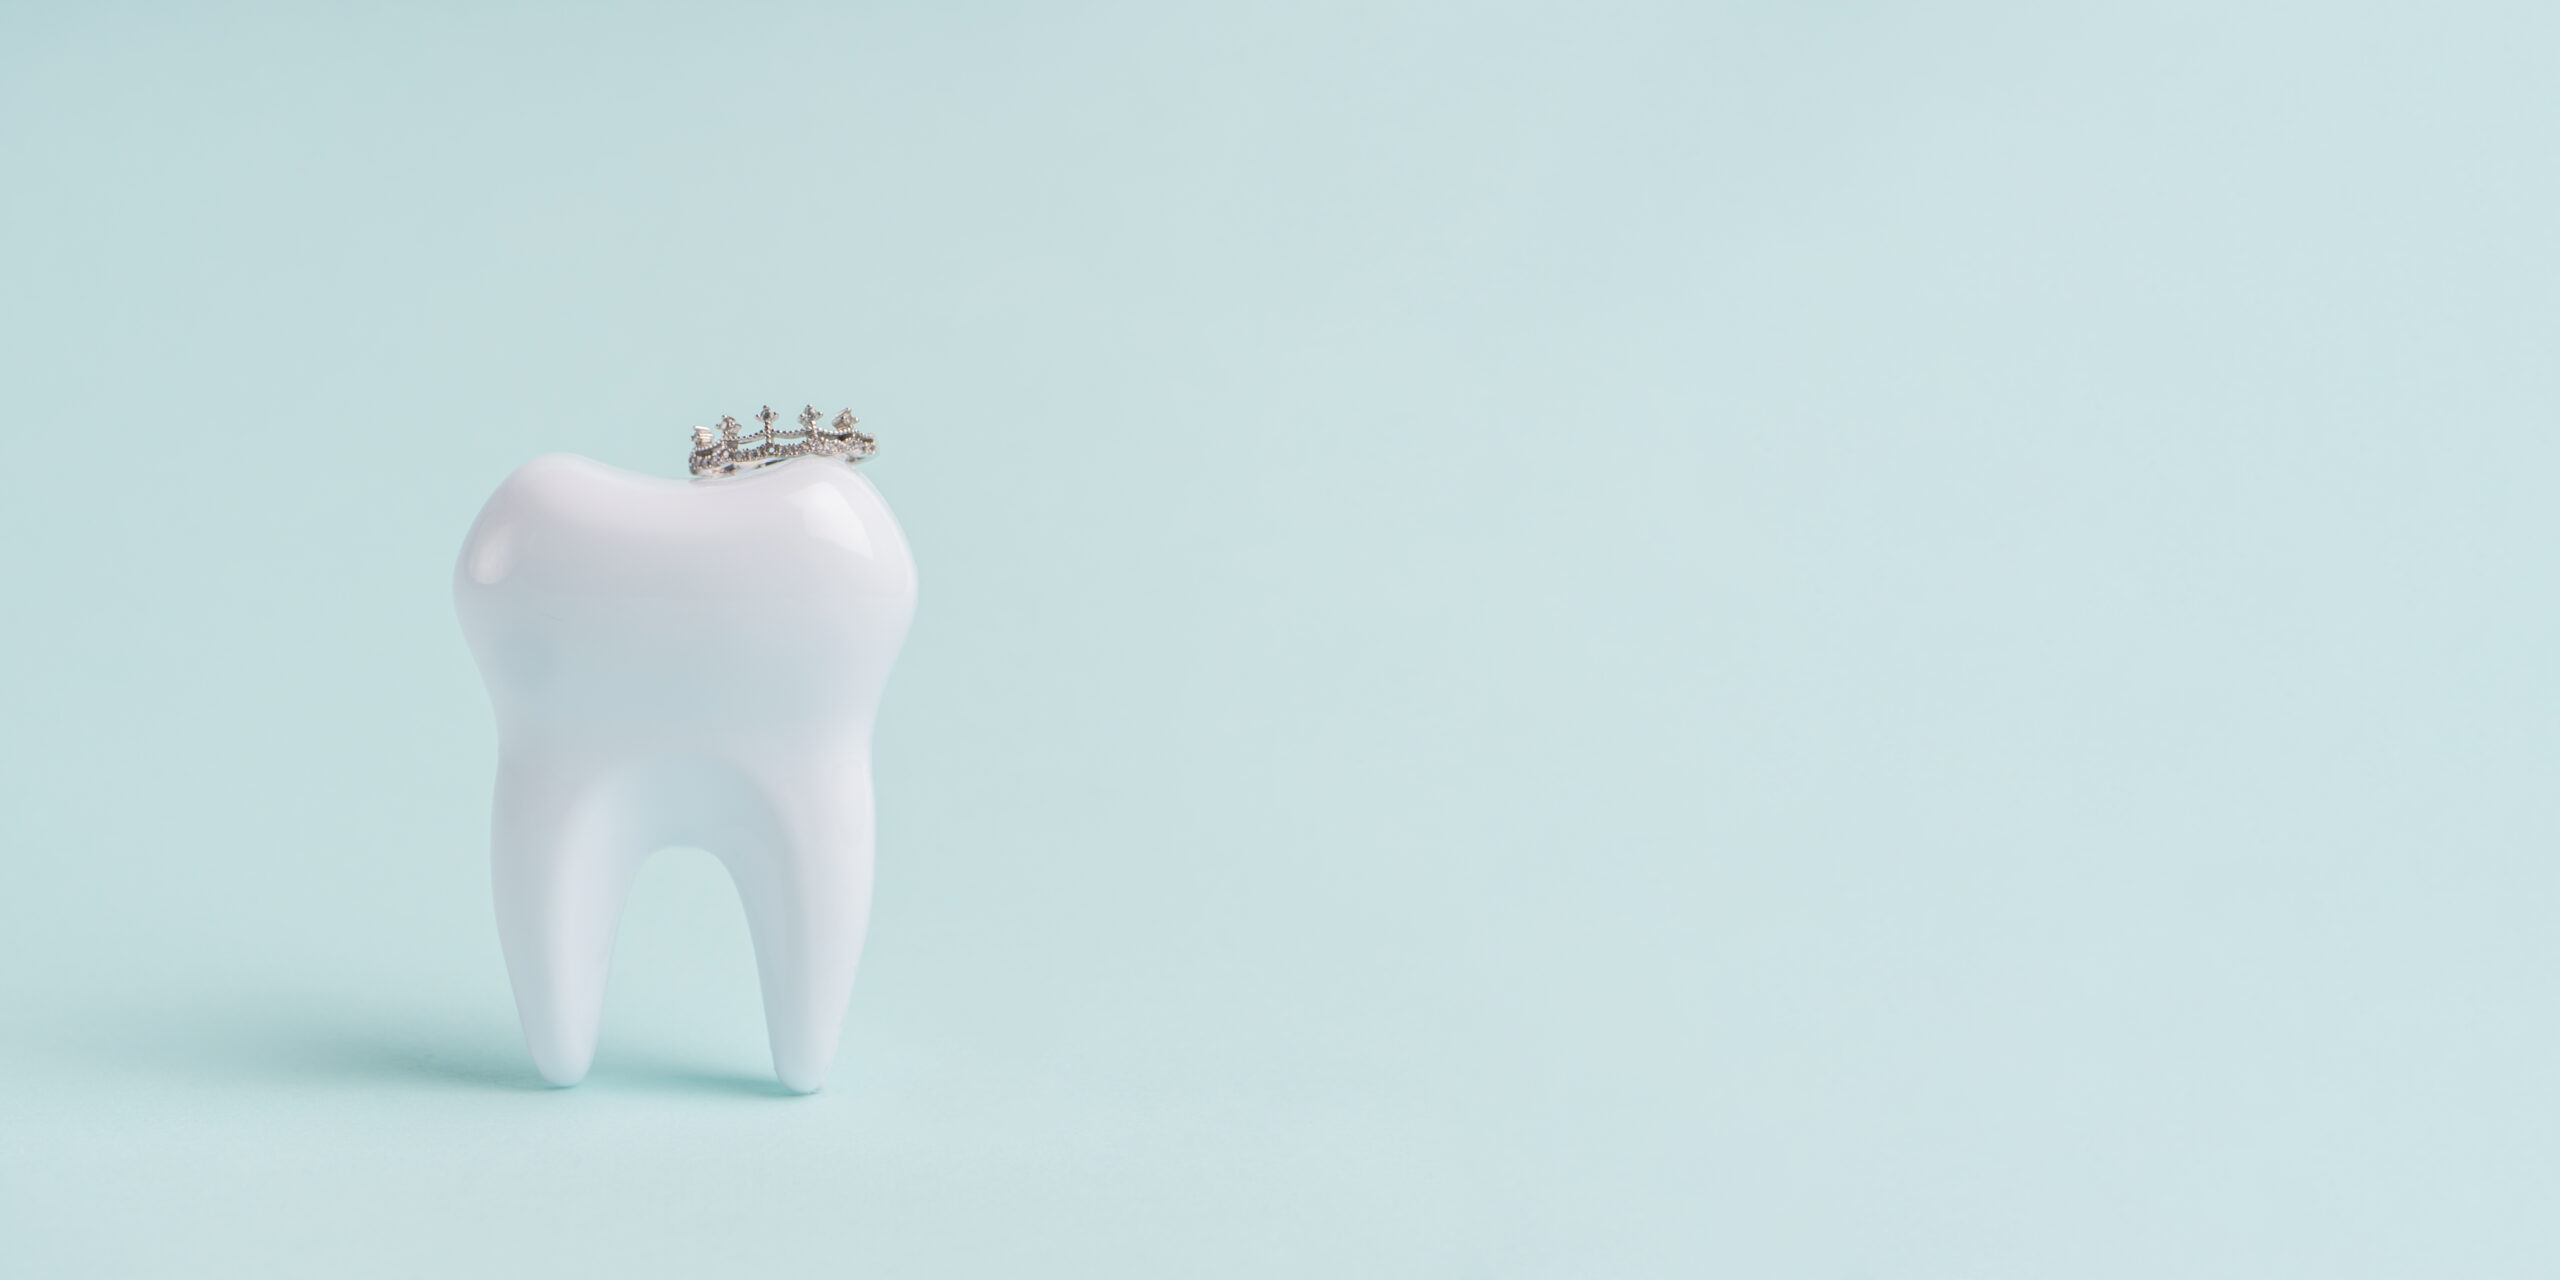 Weißer Zahn mit einer kleinen Krone auf einem hell blauen Hintergrund